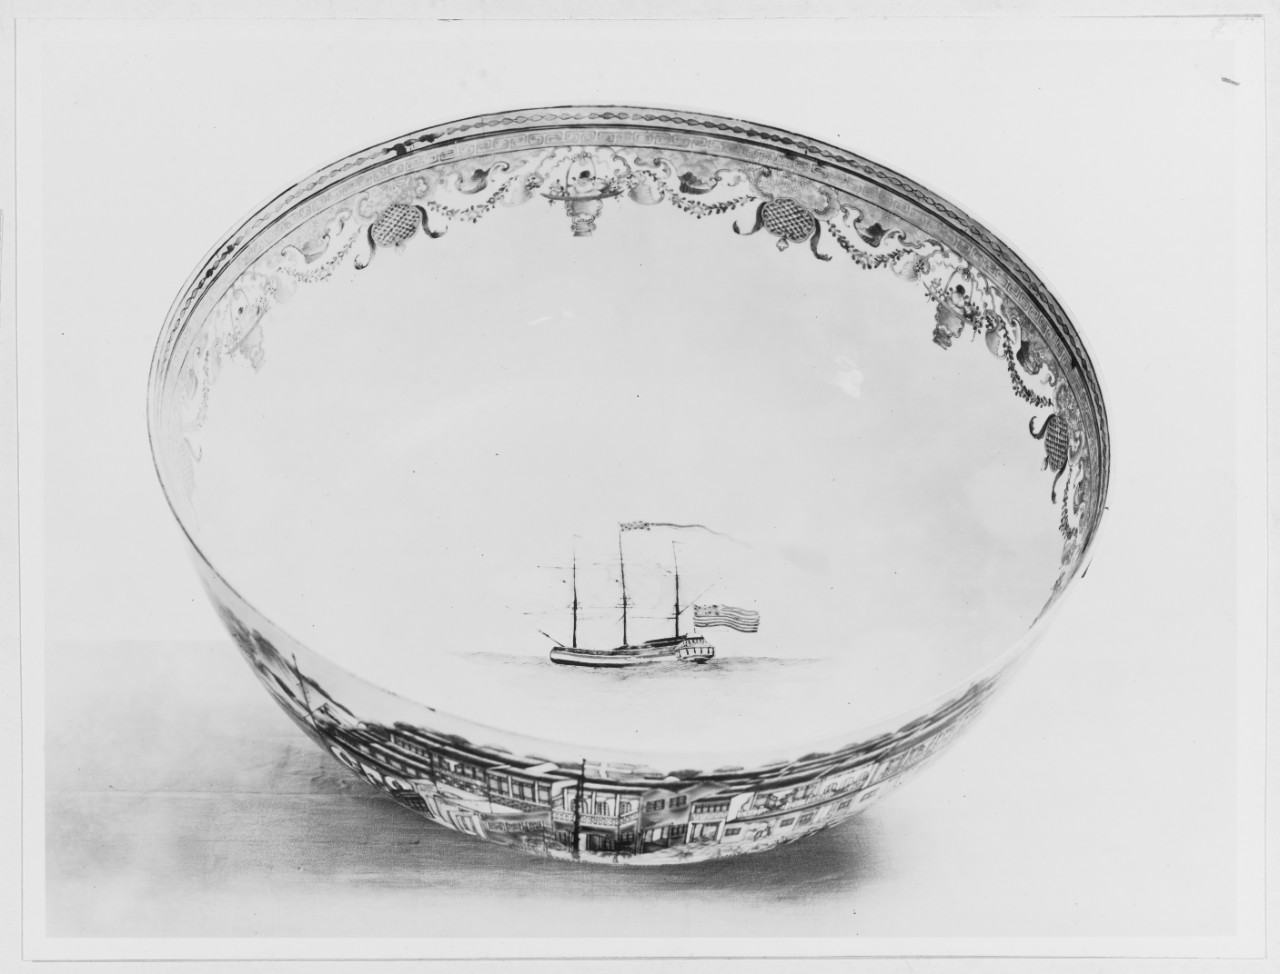 Captain John Barry's Oriental Lowestoft Punch Bowl, c. 1790